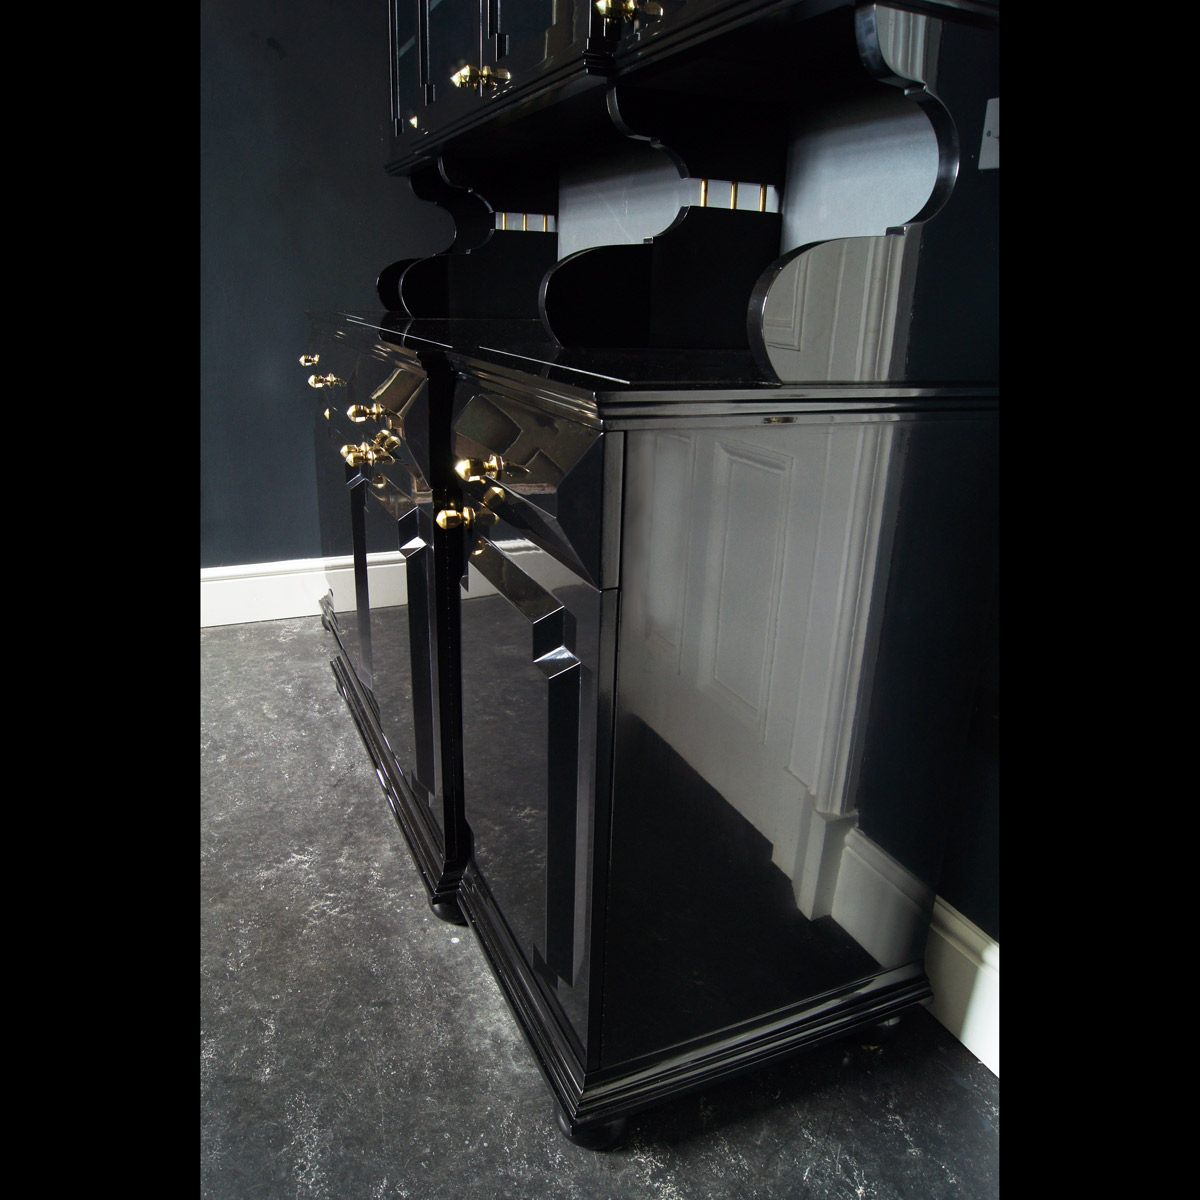 Henri's Black Polished Dresser